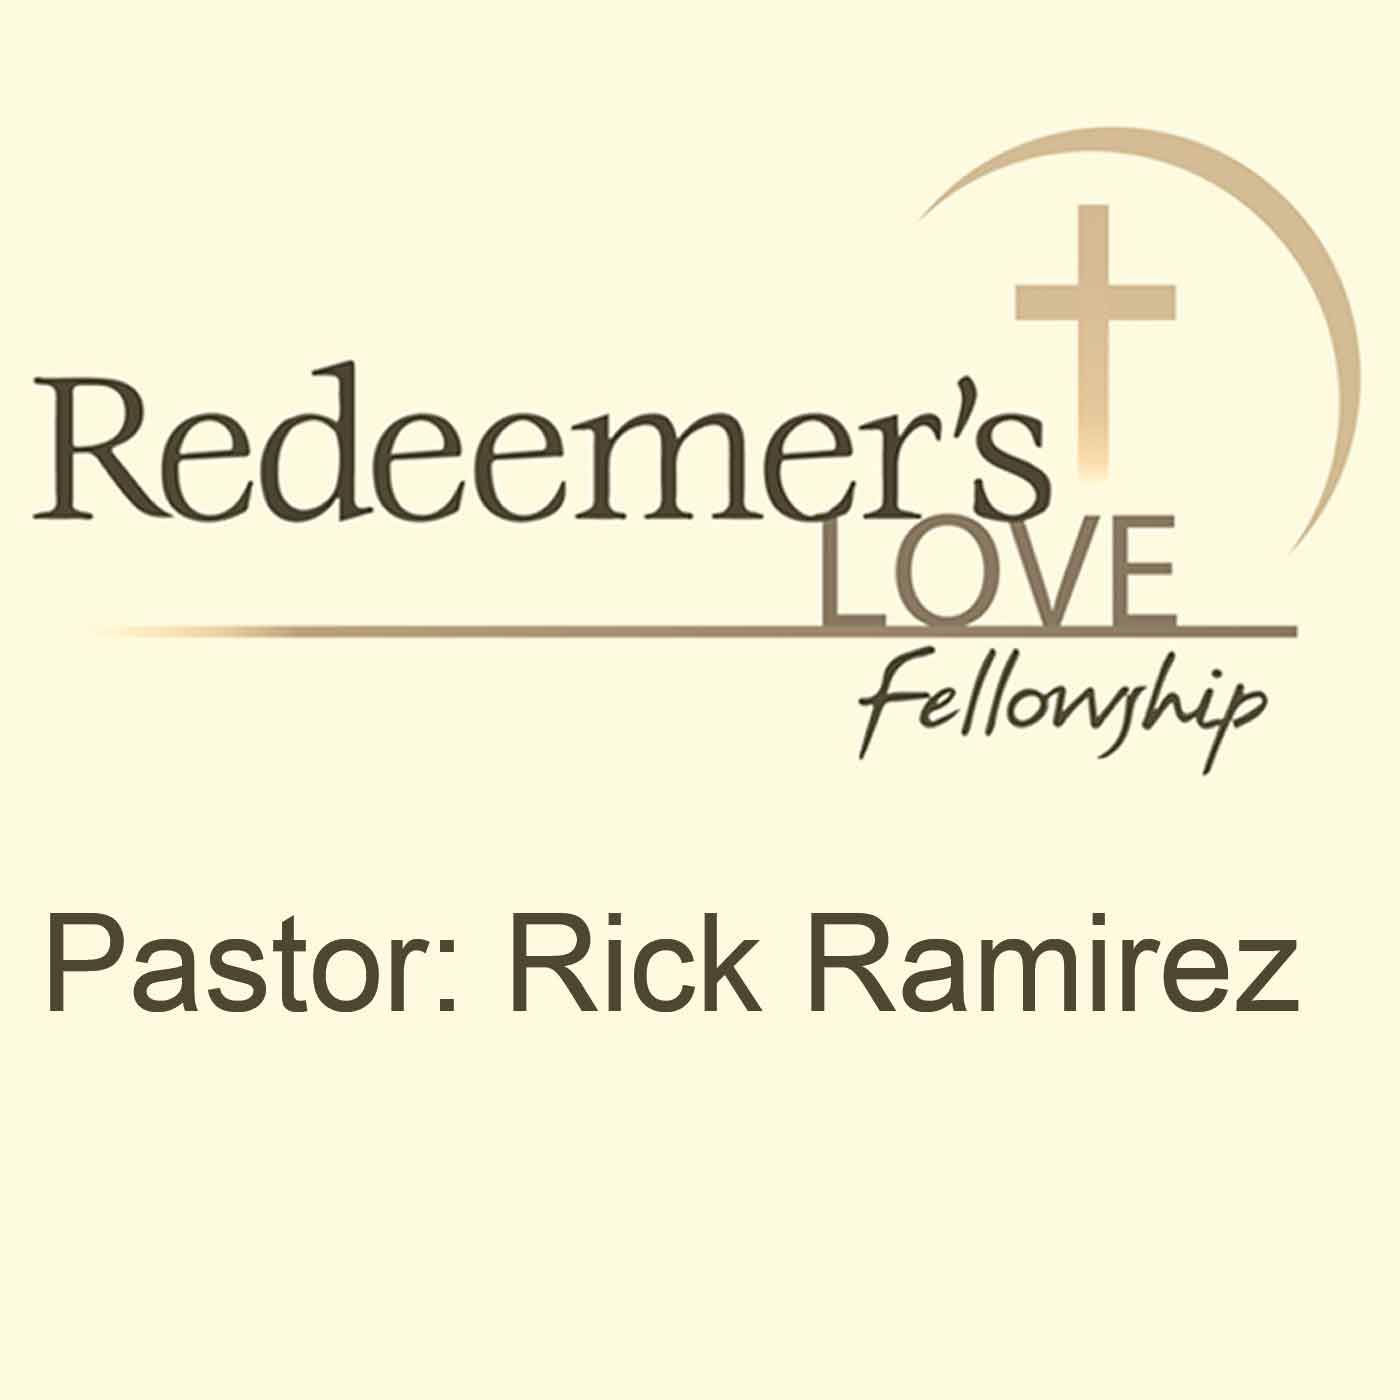 Redeemer's Love Fellowship